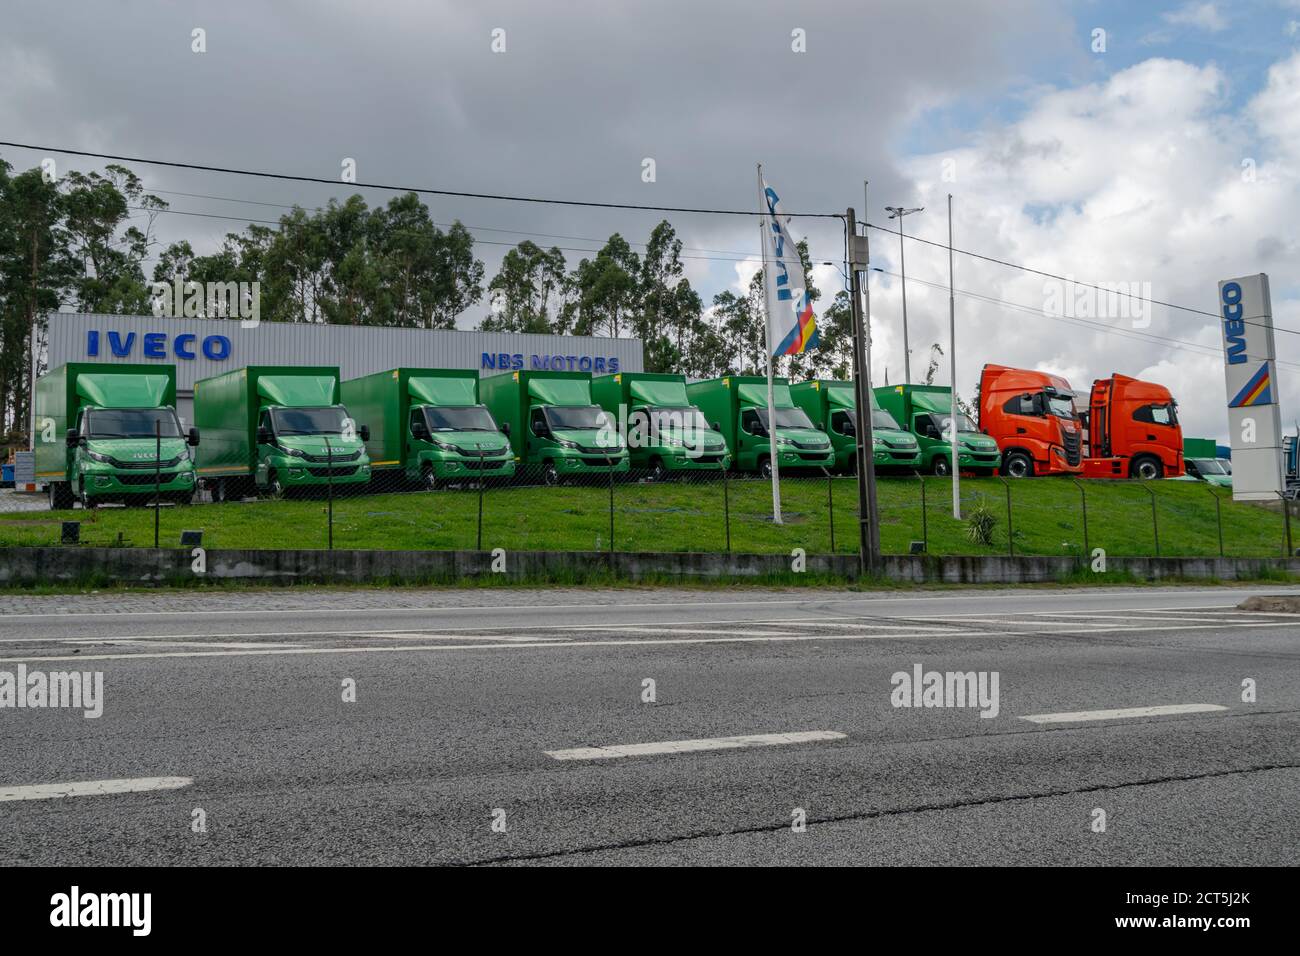 Les camions Iveco sont garés en attendant que la marchandise soit transportée ou à destination être vendu aux compagnies de transport Banque D'Images